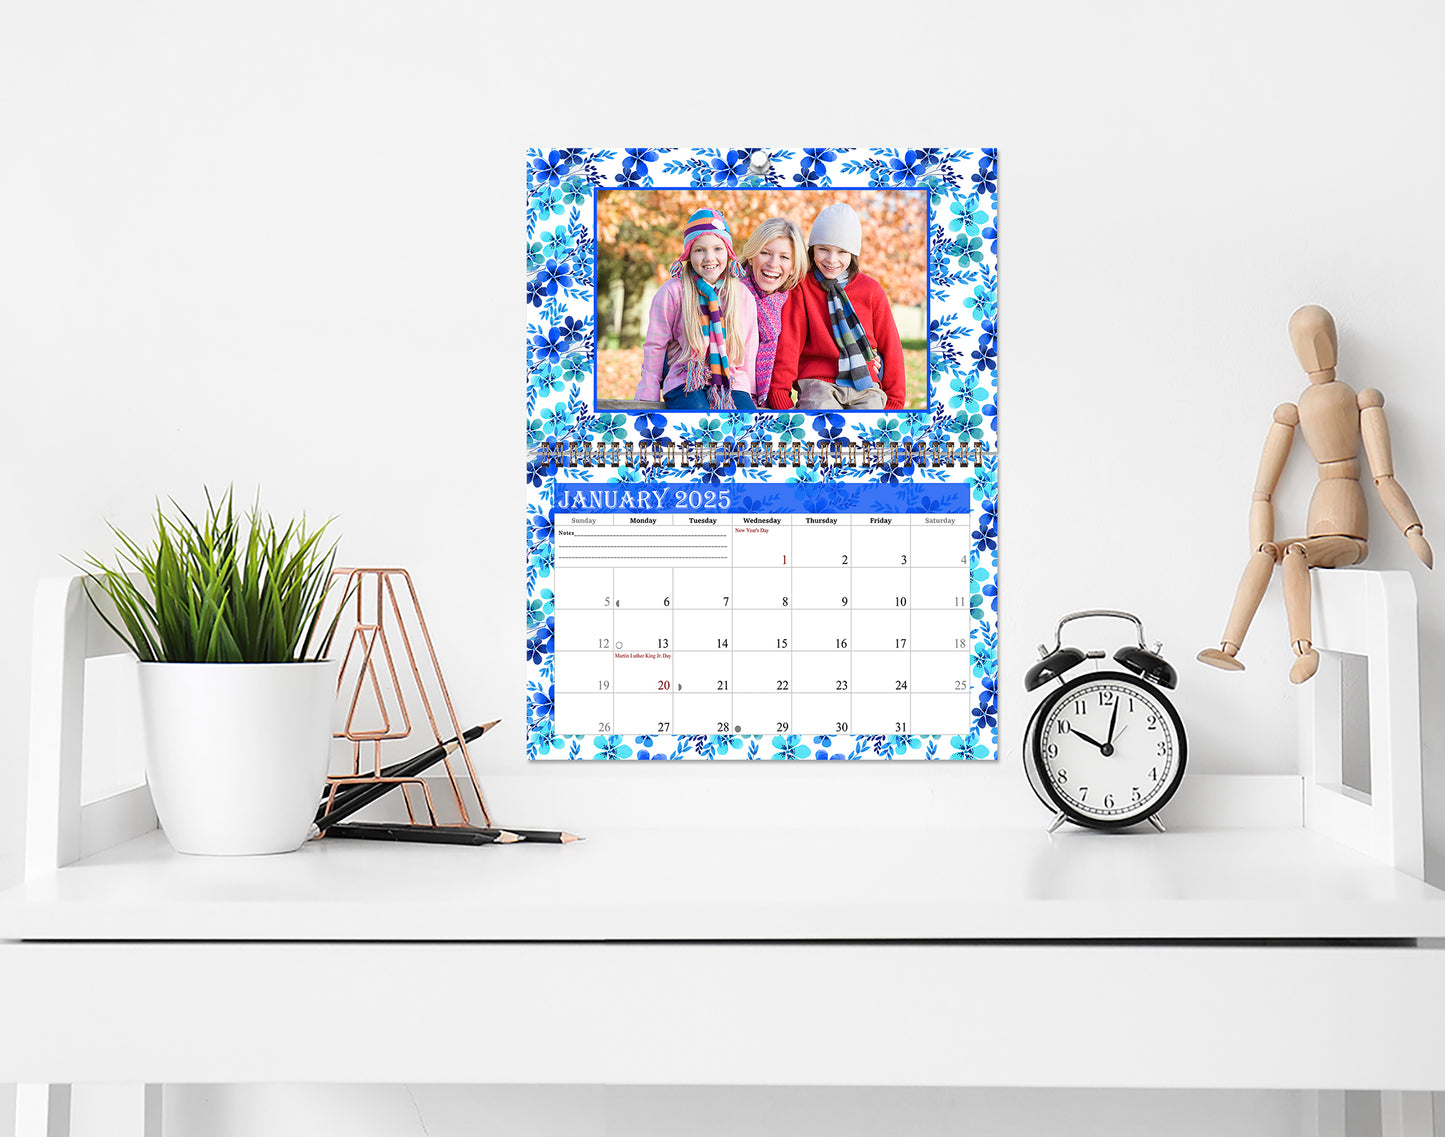 2025 Photo Frame Wall Spiral-bound Calendar (Add Your Own Photos) - 12 Months Desktop/Wall Calendar/Planner - (Edition #12)